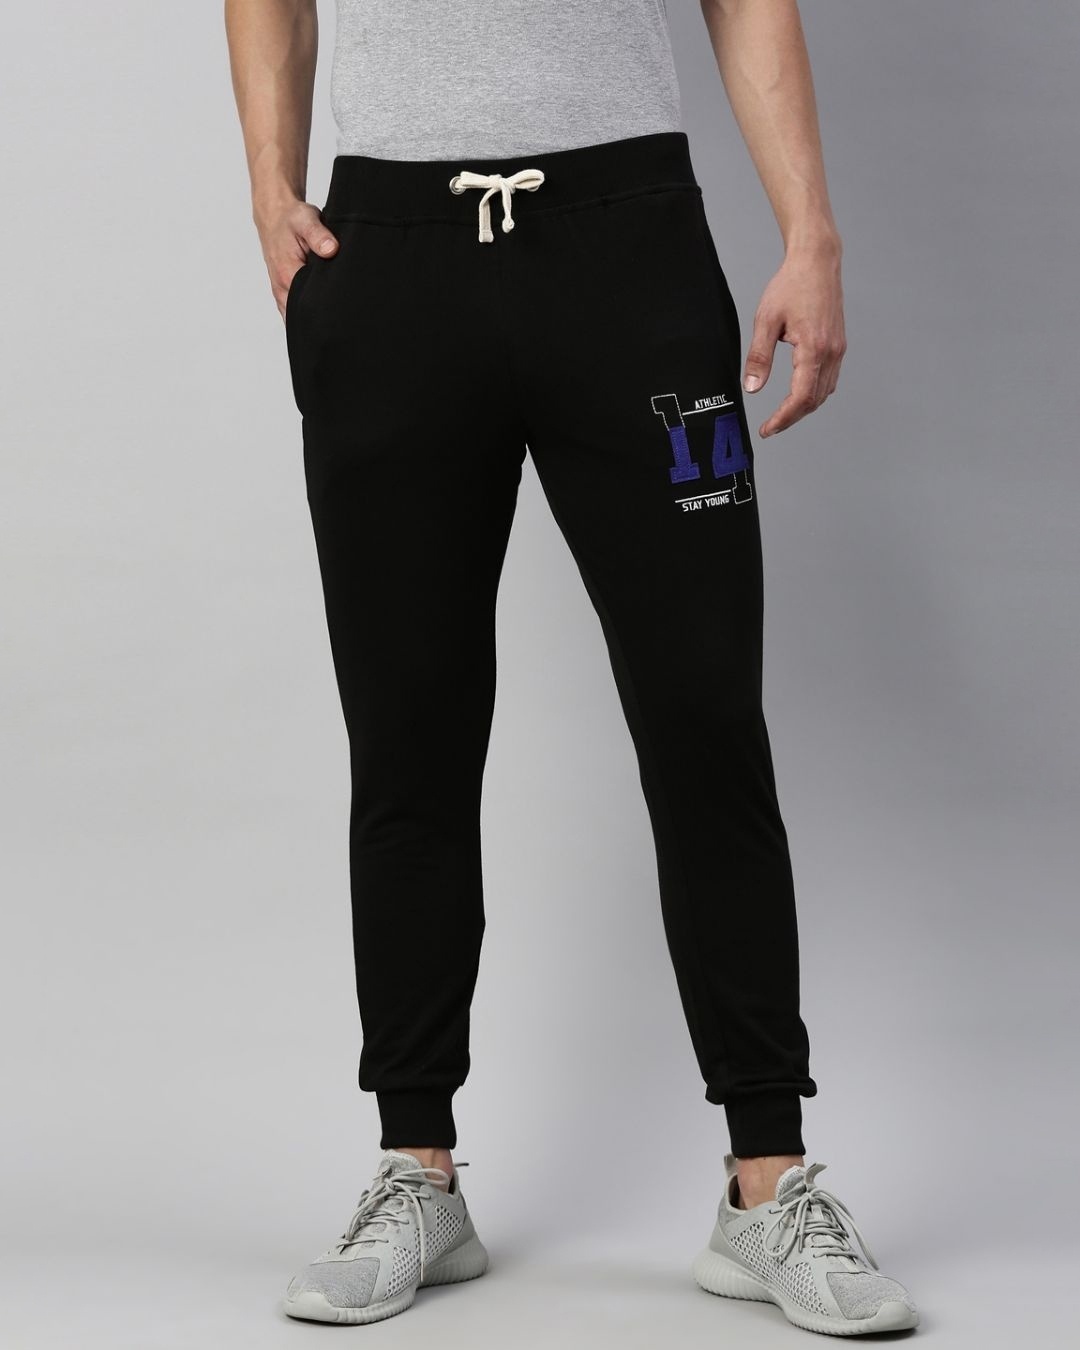 Buy Men's Black Embroidered Slim Fit Joggers for Men Black Online at ...